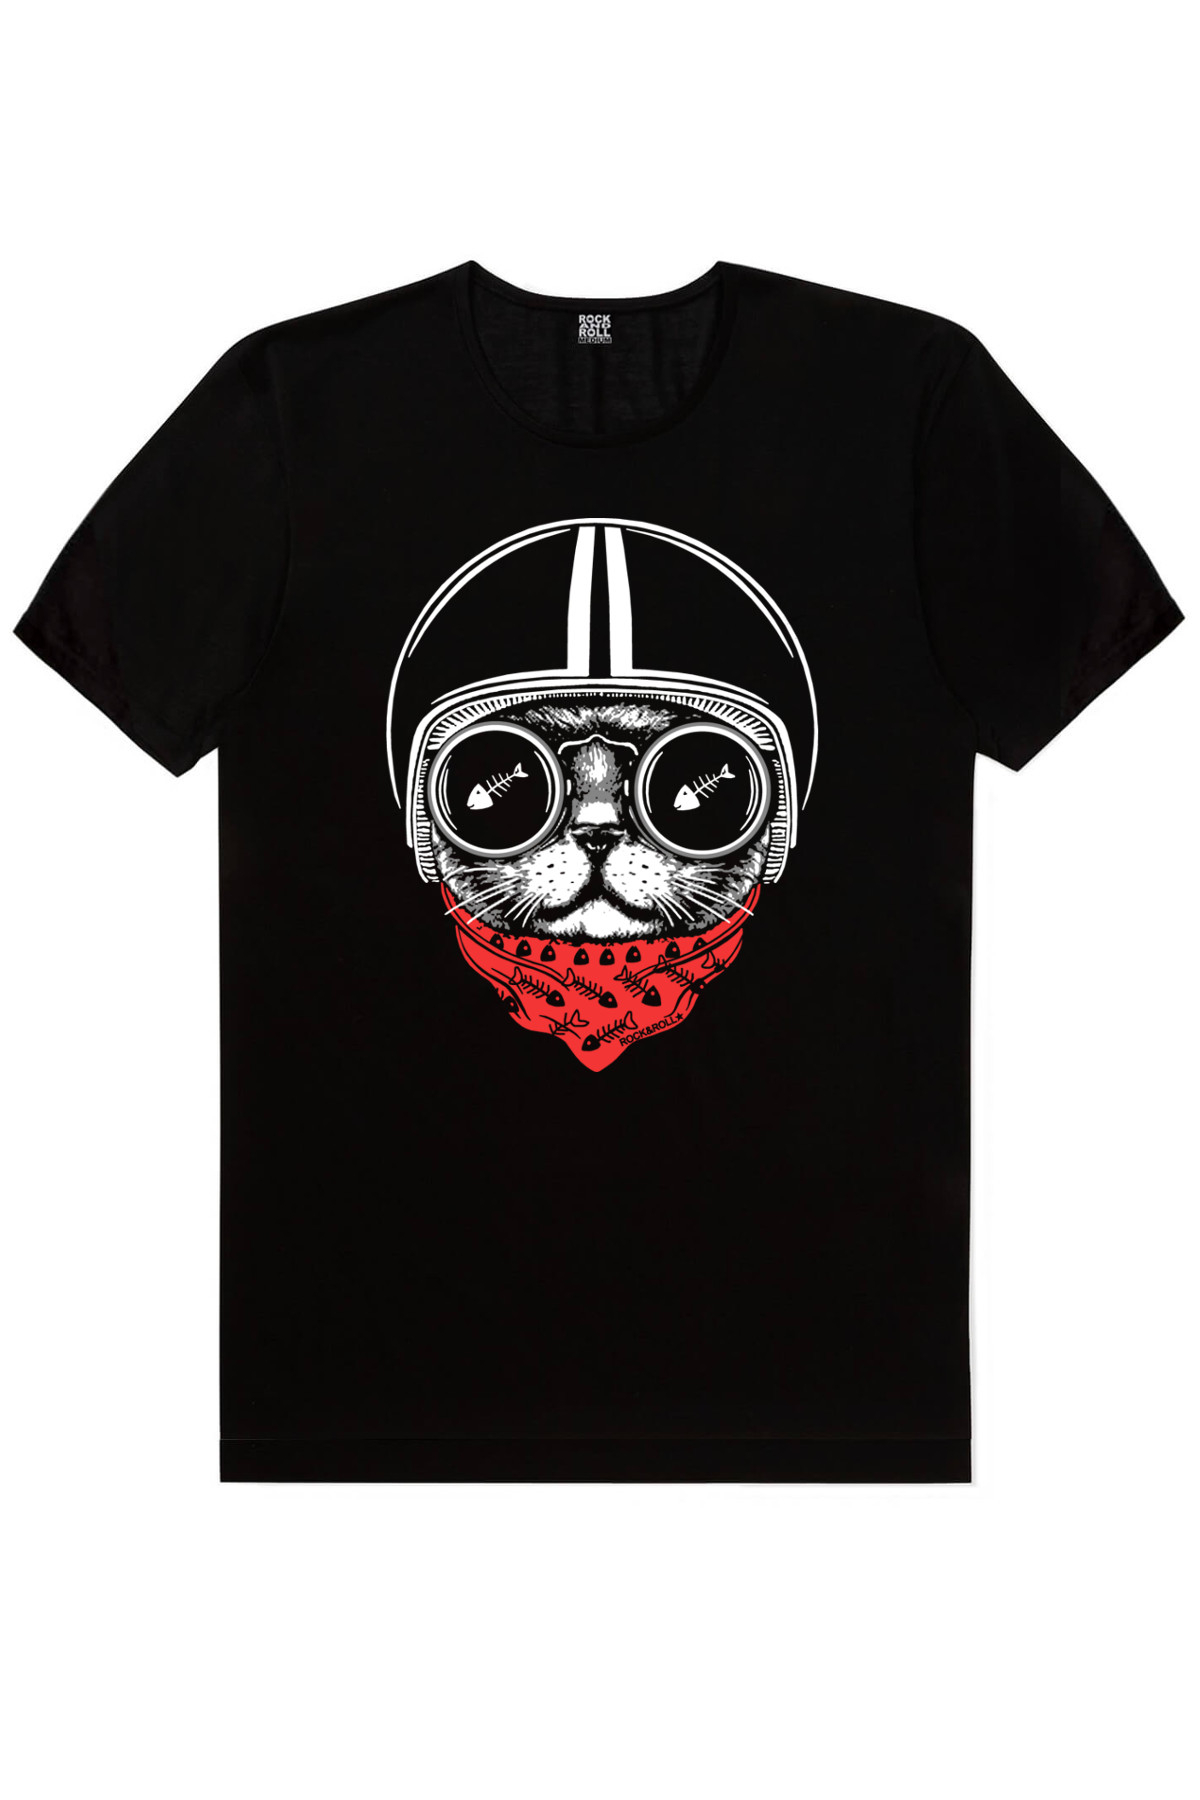 Dairede Kedi Kafası, Kasklı Kedi, Kutup Sörfü Erkek 3'lü Eko Paket T-shirt